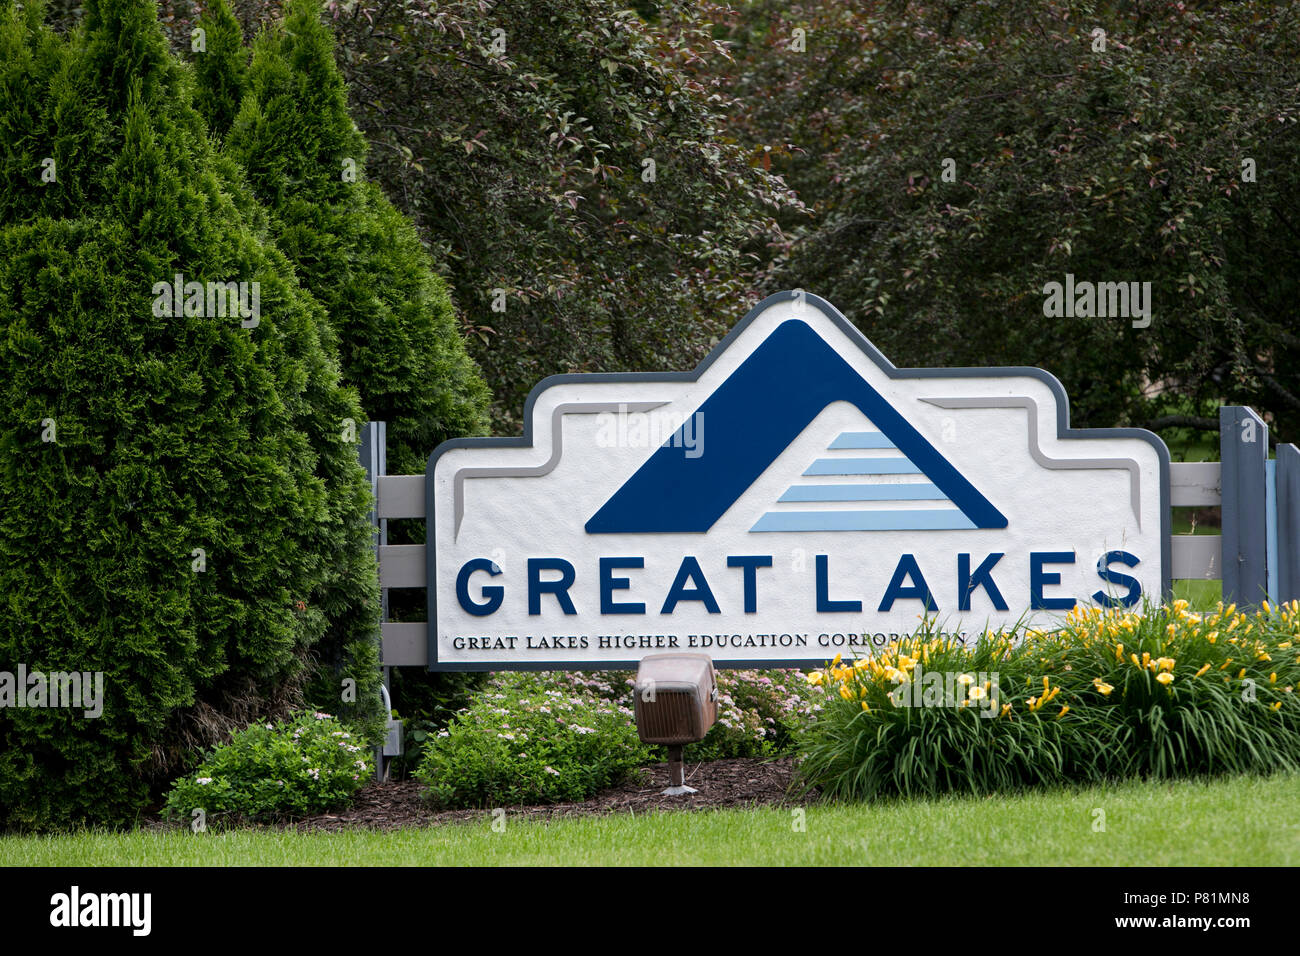 Ein logo Zeichen außerhalb des Hauptquartiers der Großen Seen Hochschulbildung Corporation in Madison, Wisconsin, am 23. Juni 2018. Stockfoto